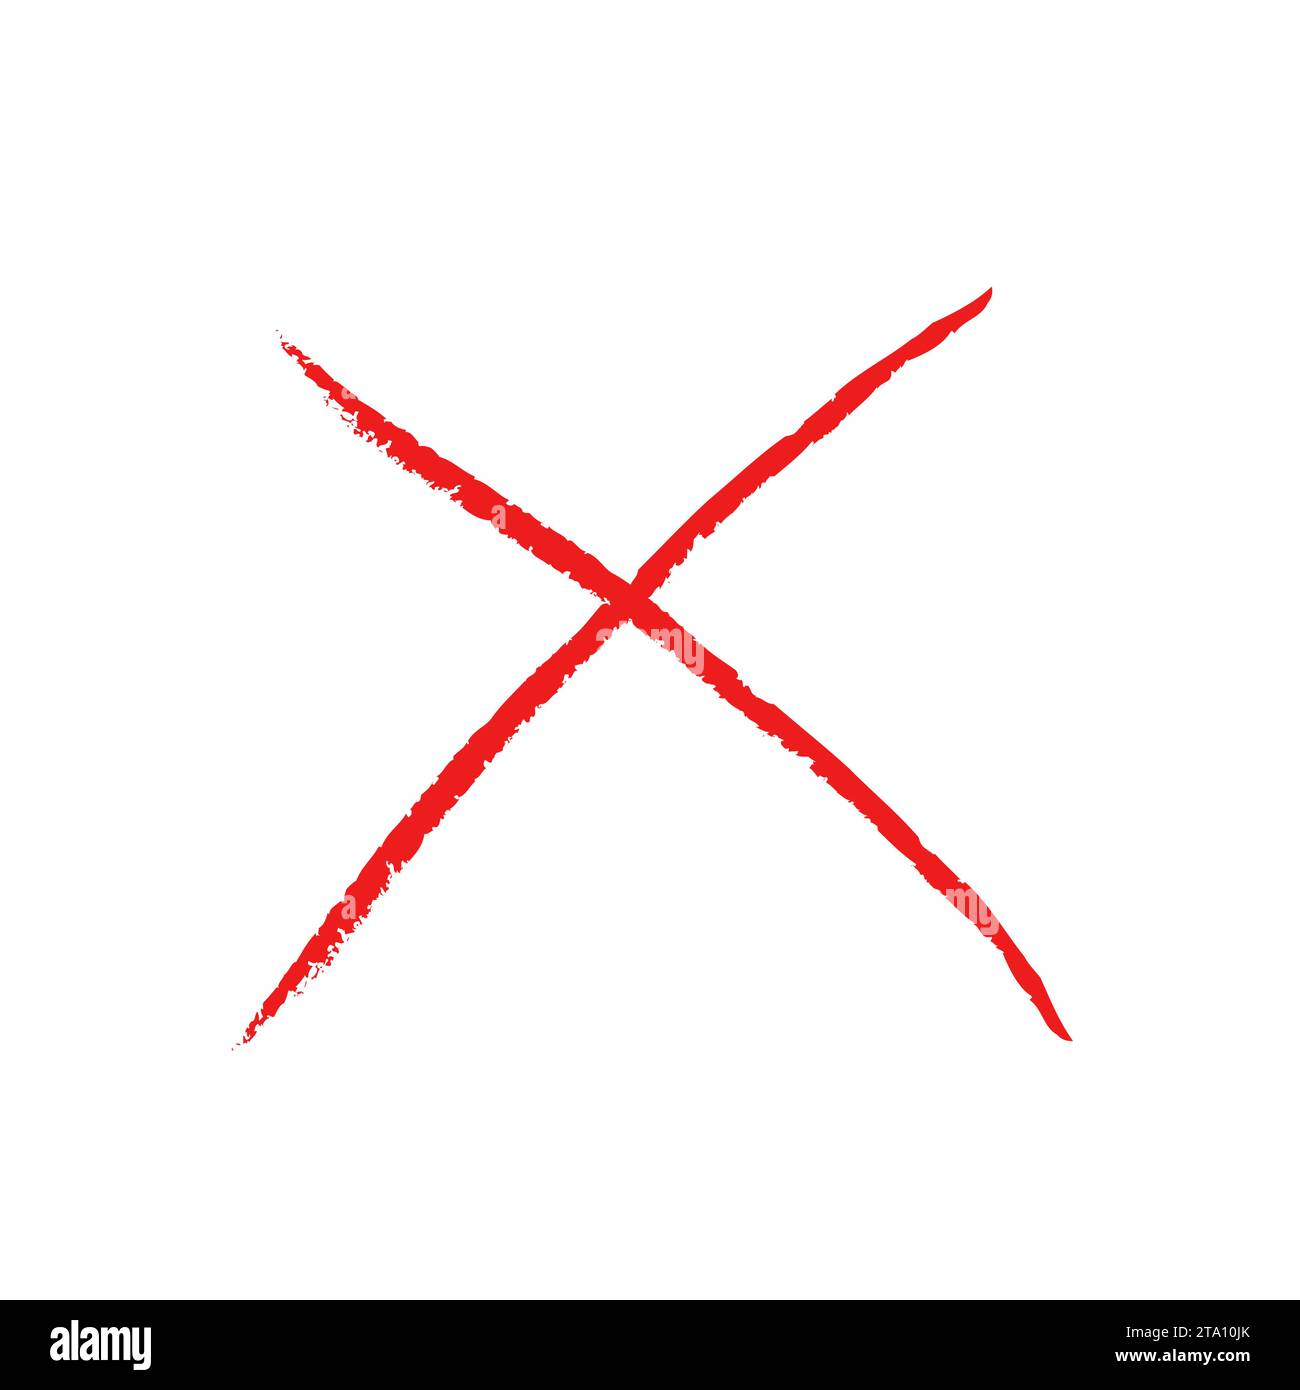 Segno X rosso grunge vettoriale. Simbolo X barrato. Elemento di design incrociato per annullare, rifiutare e rifiutare qualcosa. Illustrazione Vettoriale